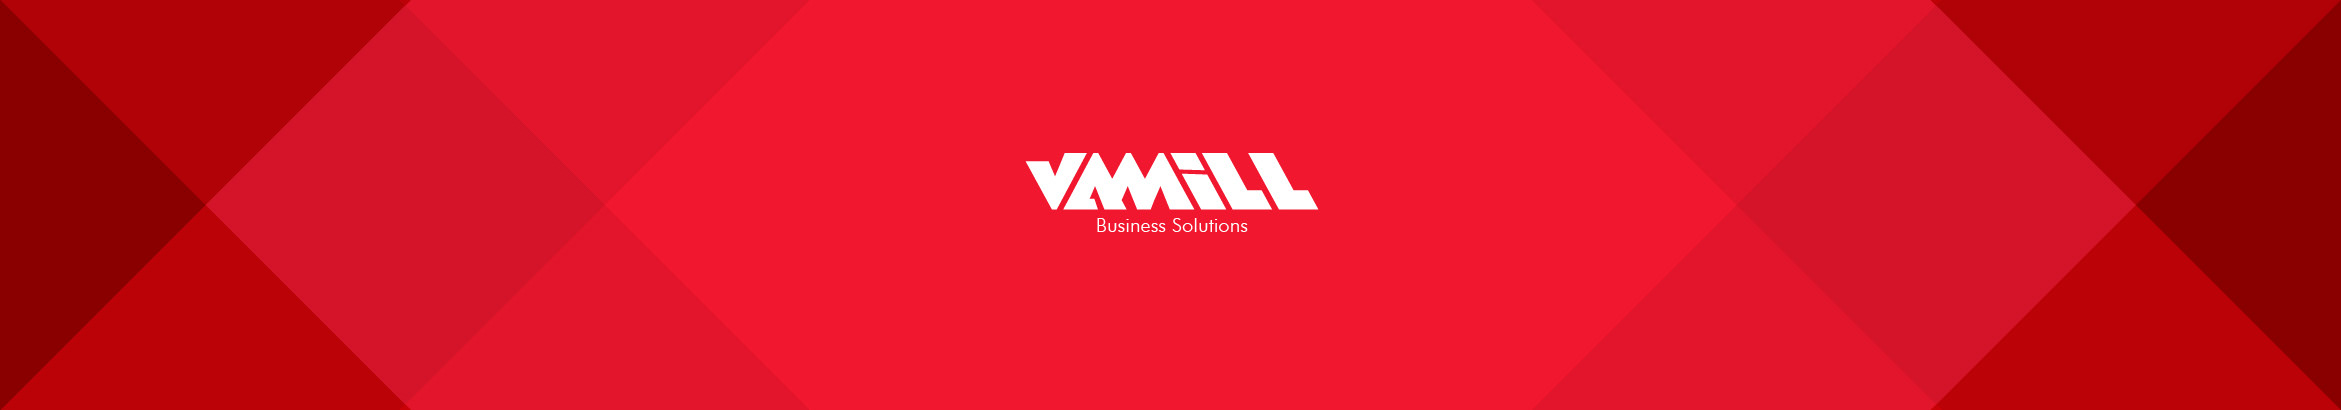 Vamill Media のプロファイルバナー